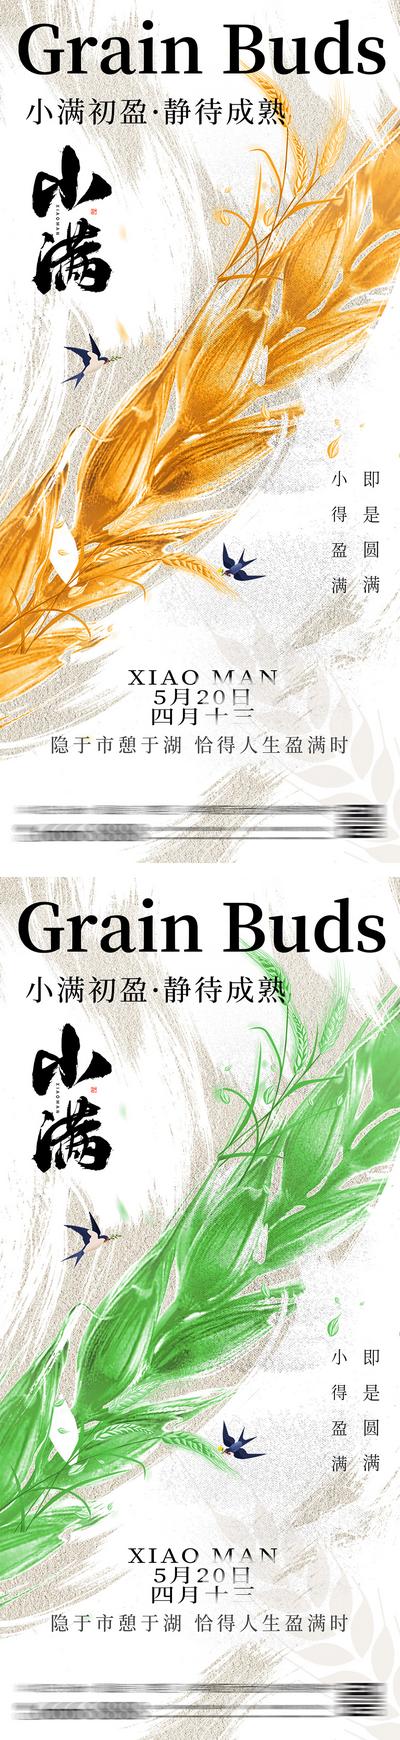 南门网 广告 海报 插画 小满 质感 二十四节气 麦穗 成熟 麦子 芒种 小麦 丰收 谷物 简约 高级 麦子 手绘